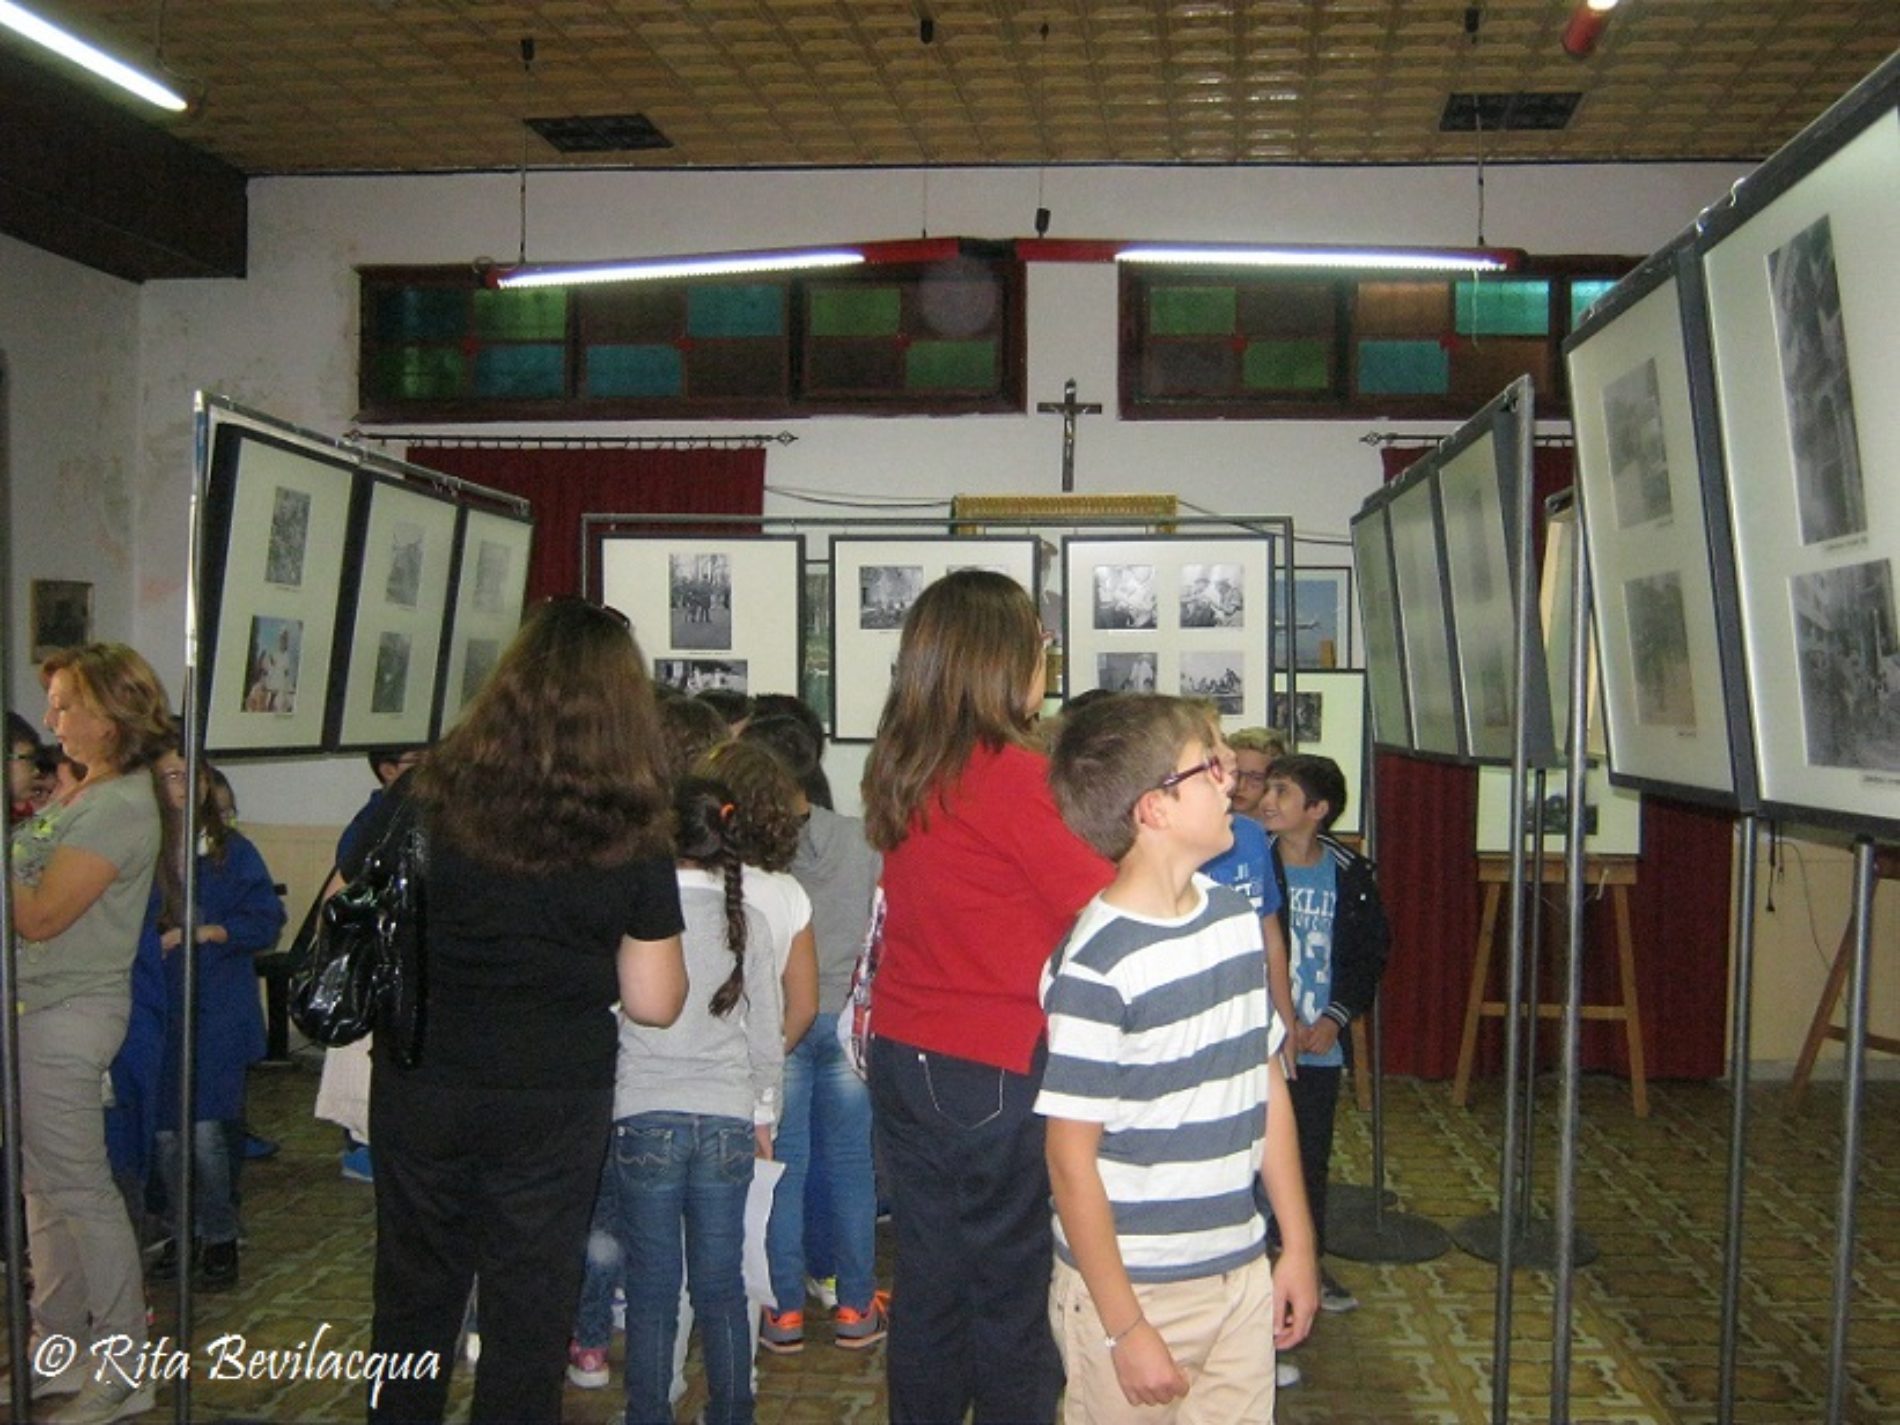 Tre classi della scuola primaria “Don Bosco” in visita alla mostra BAMBINI NELLA GUERRA.